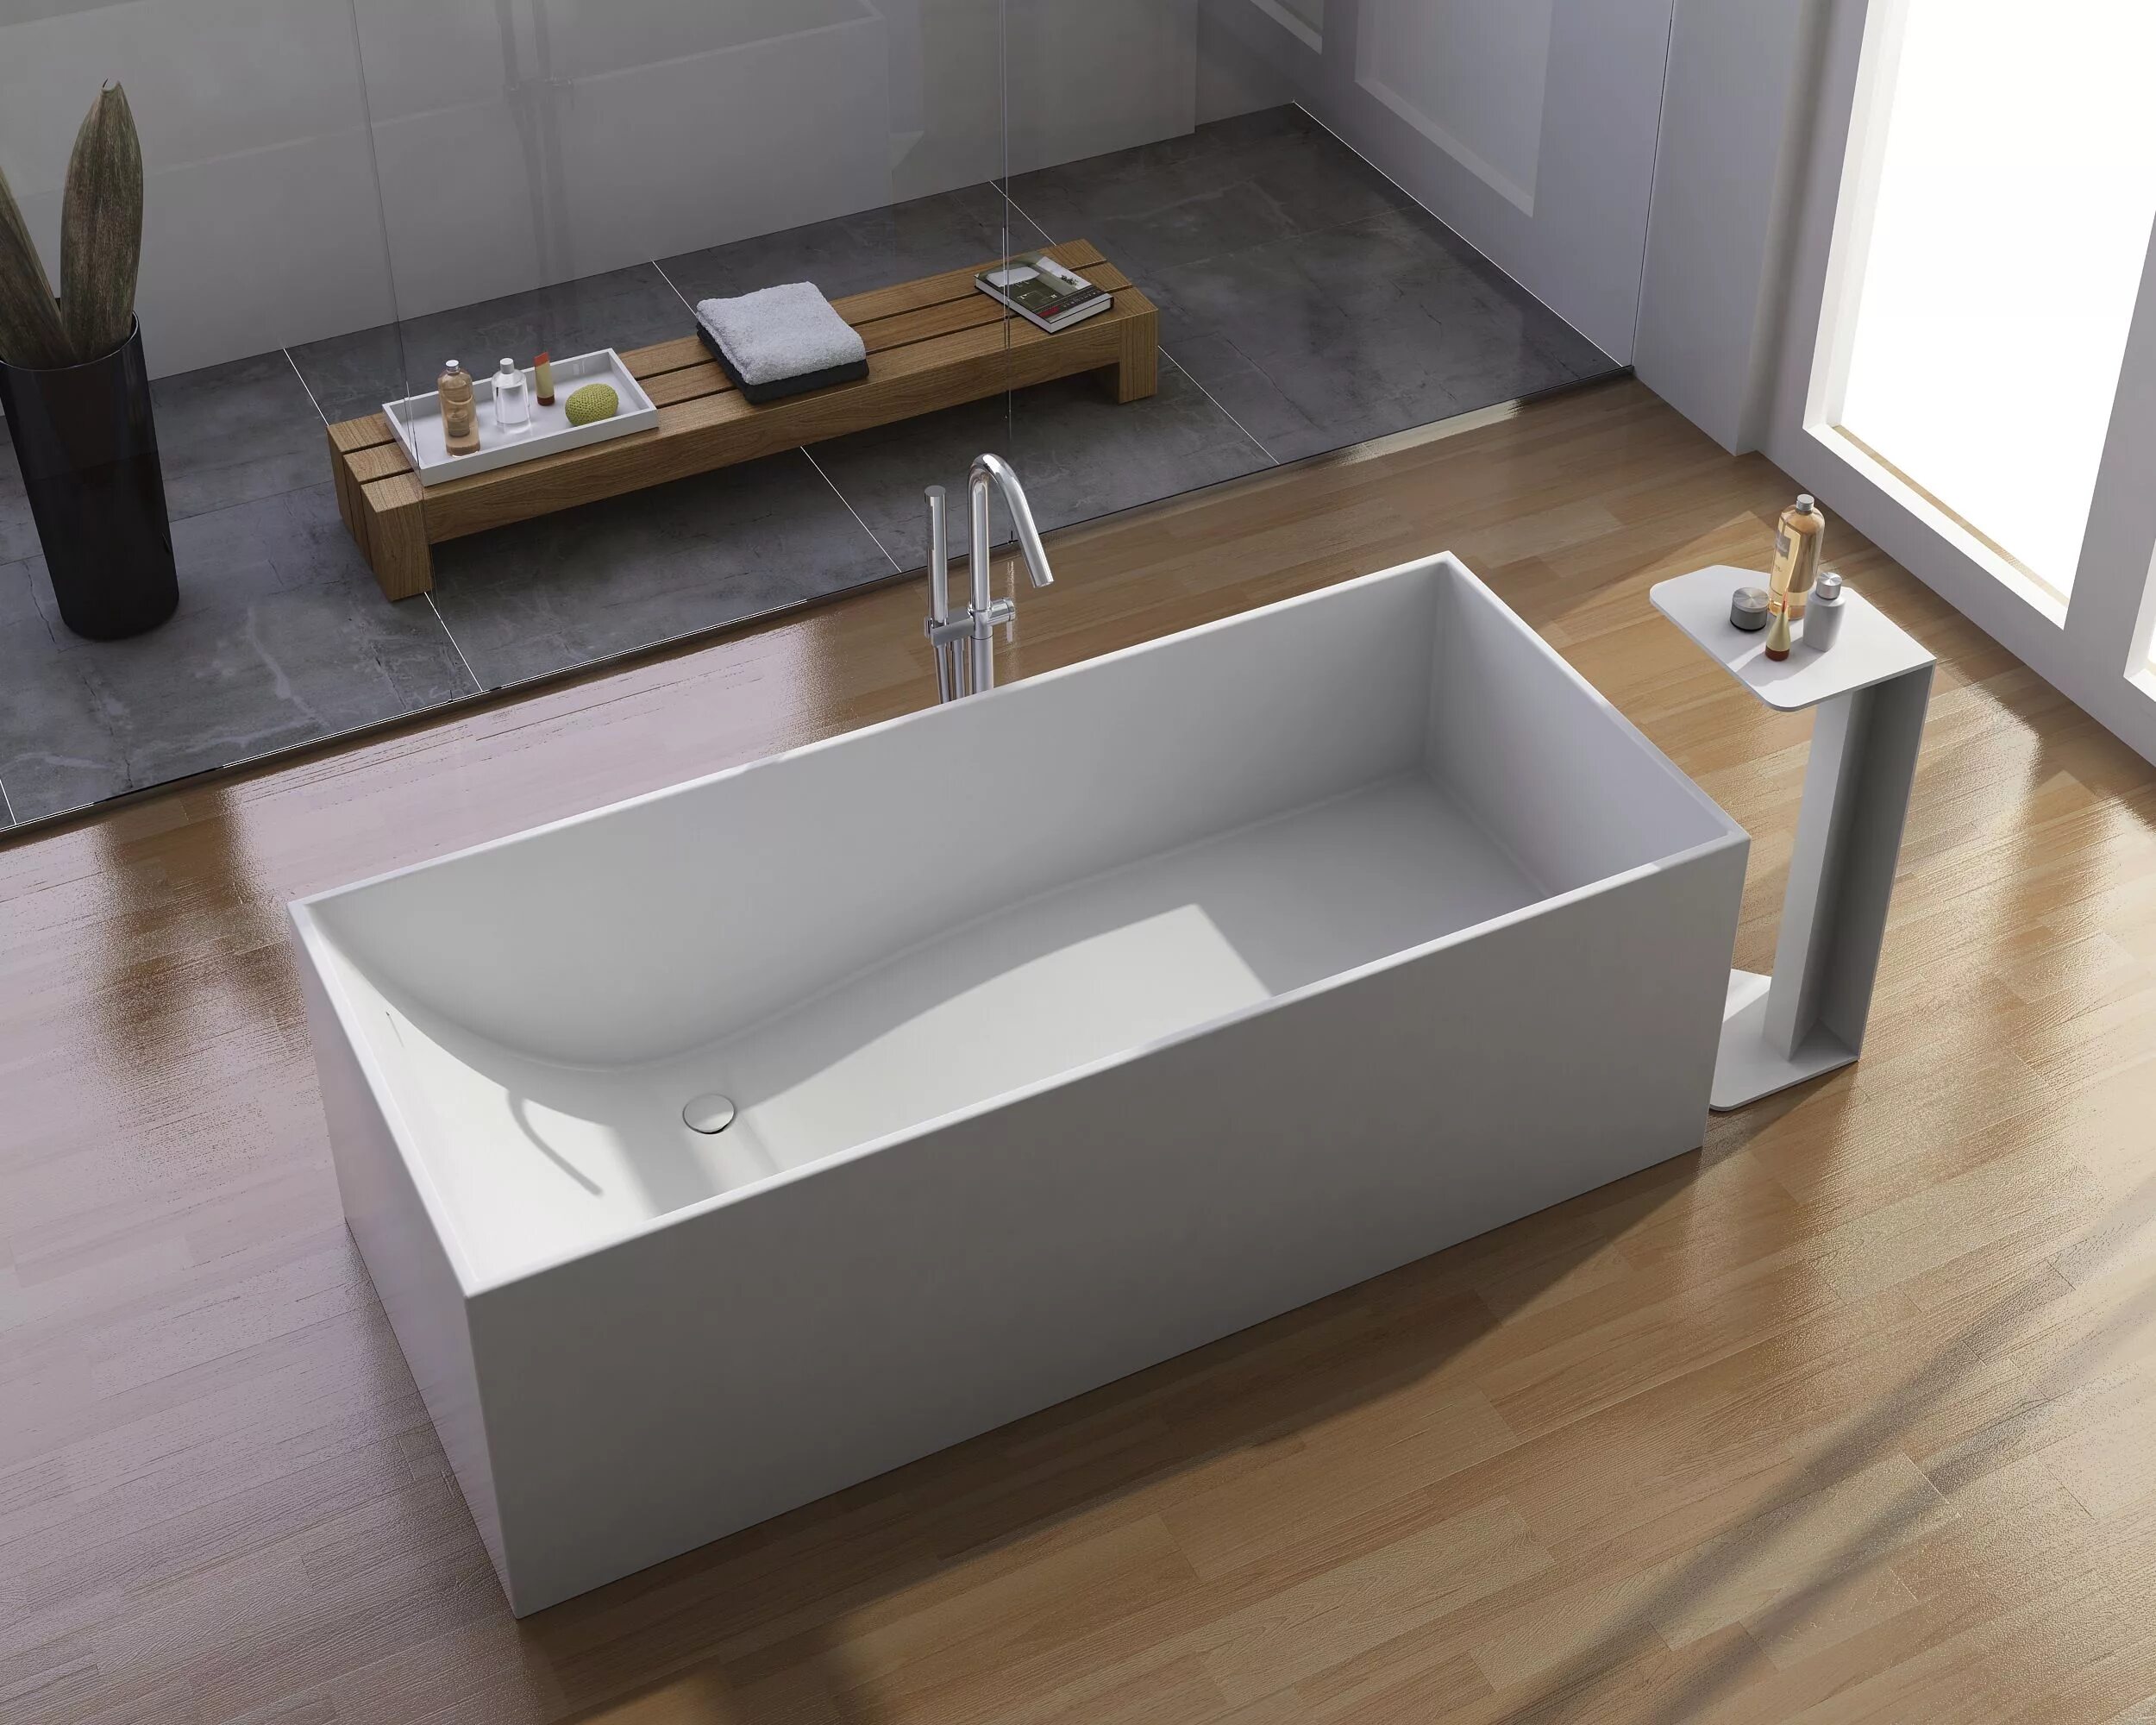 Signature Freestanding Stone ванна 1700mm. Solid surface ванны. Ванная с острым углом. Ванна акриловая неглубокая.